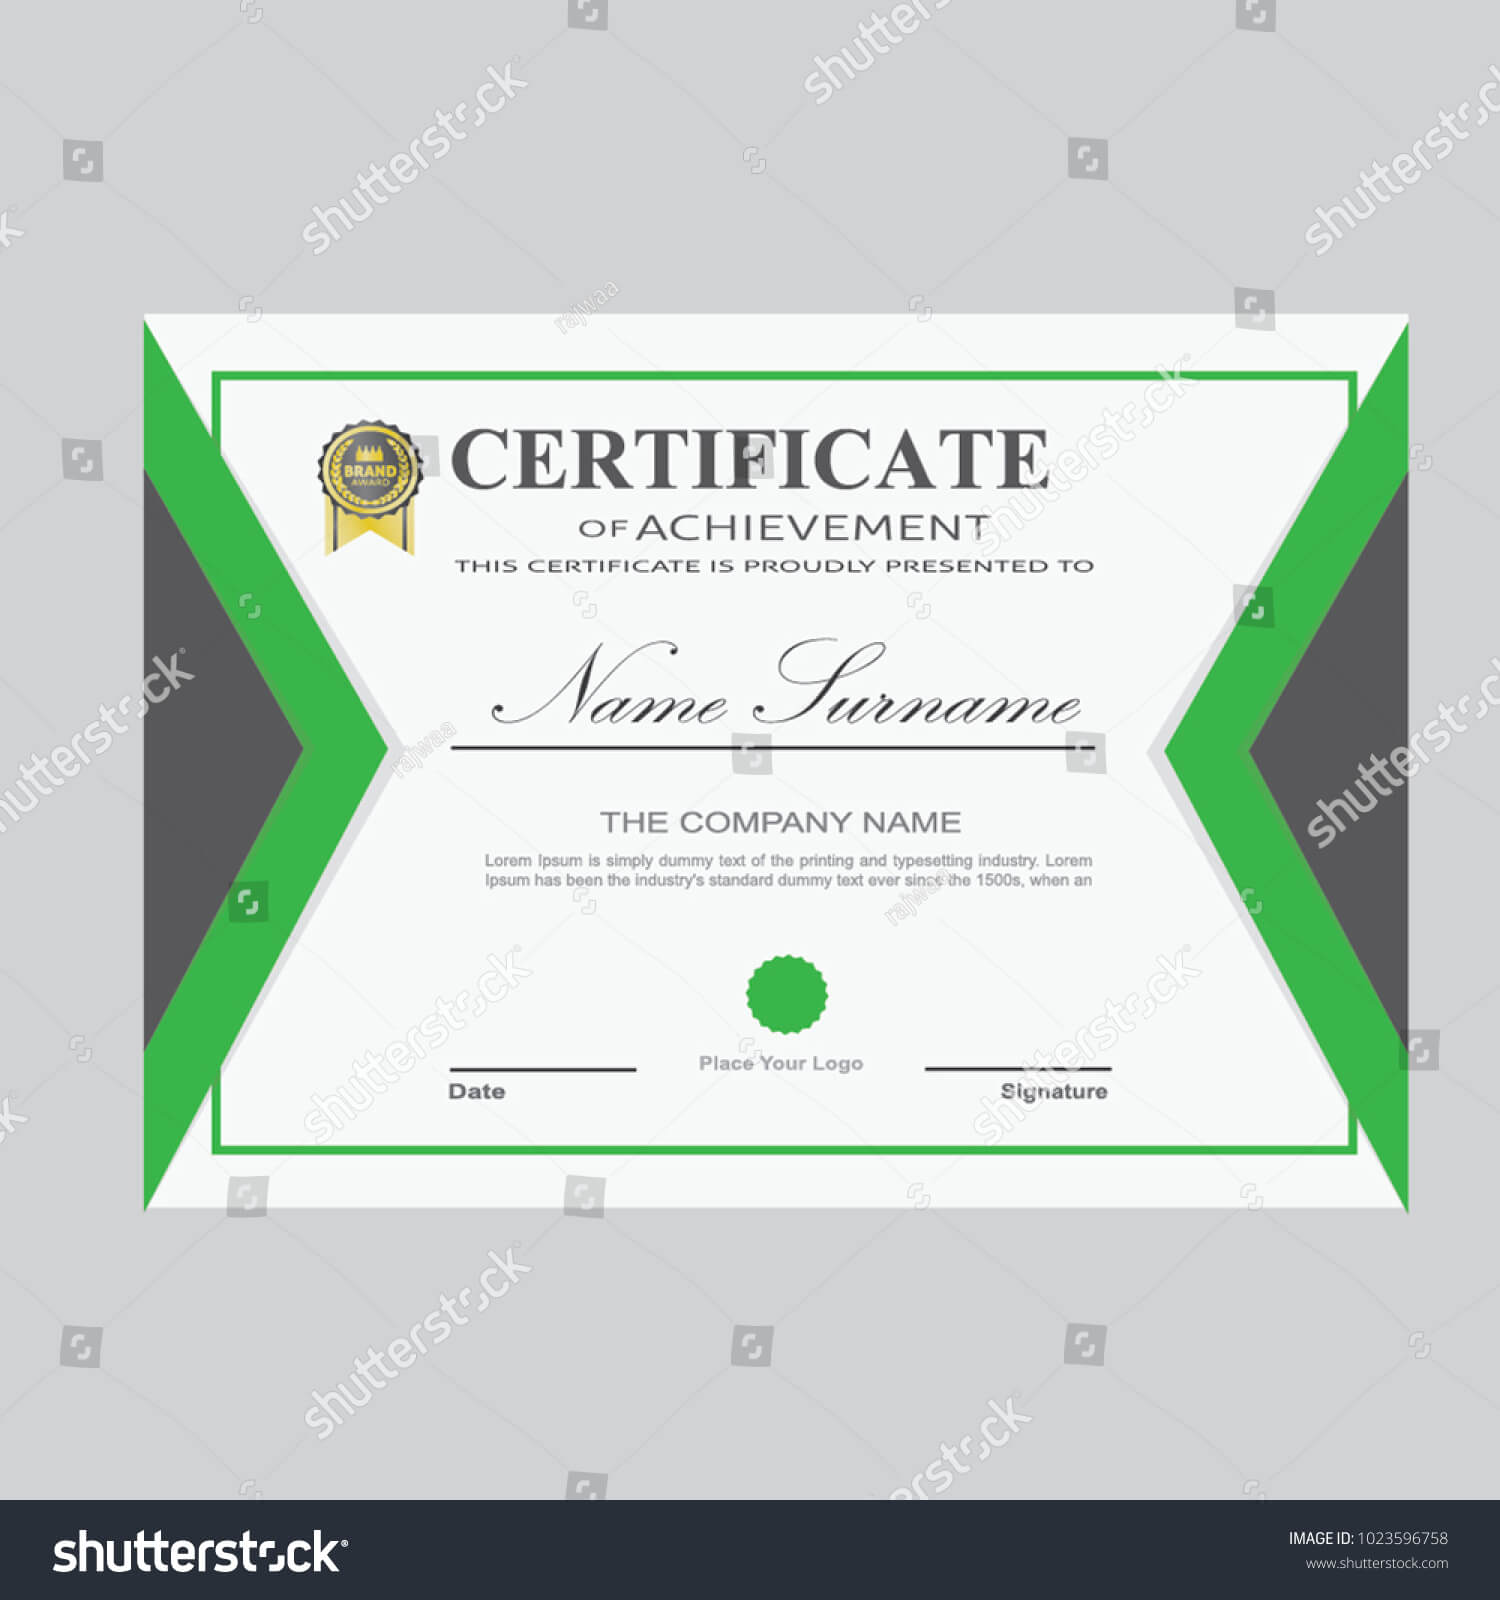 Certificate Template Modern A4 Horizontal Landscape Stock Intended For Landscape Certificate Templates